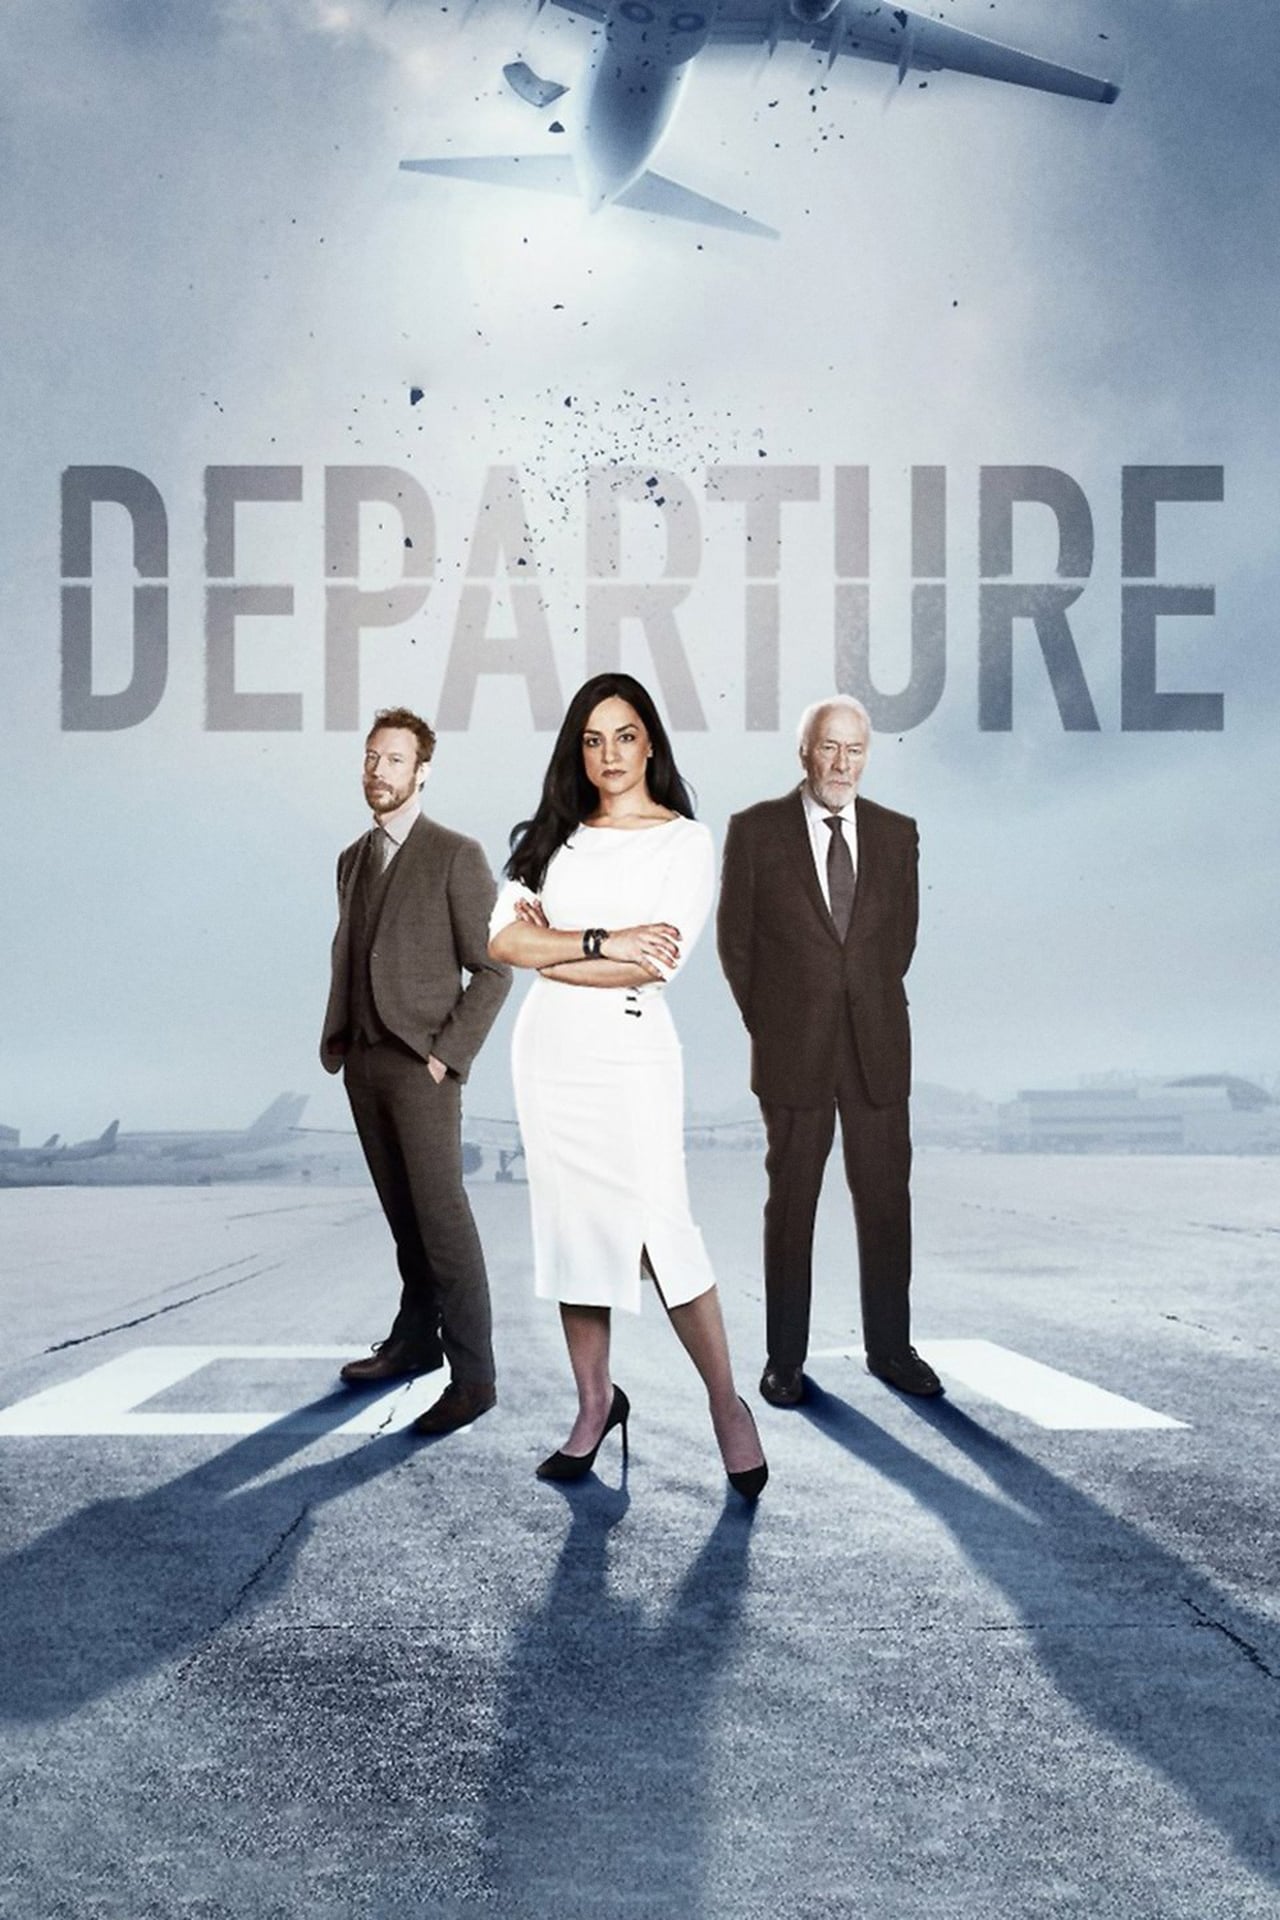 Departure (season 1)